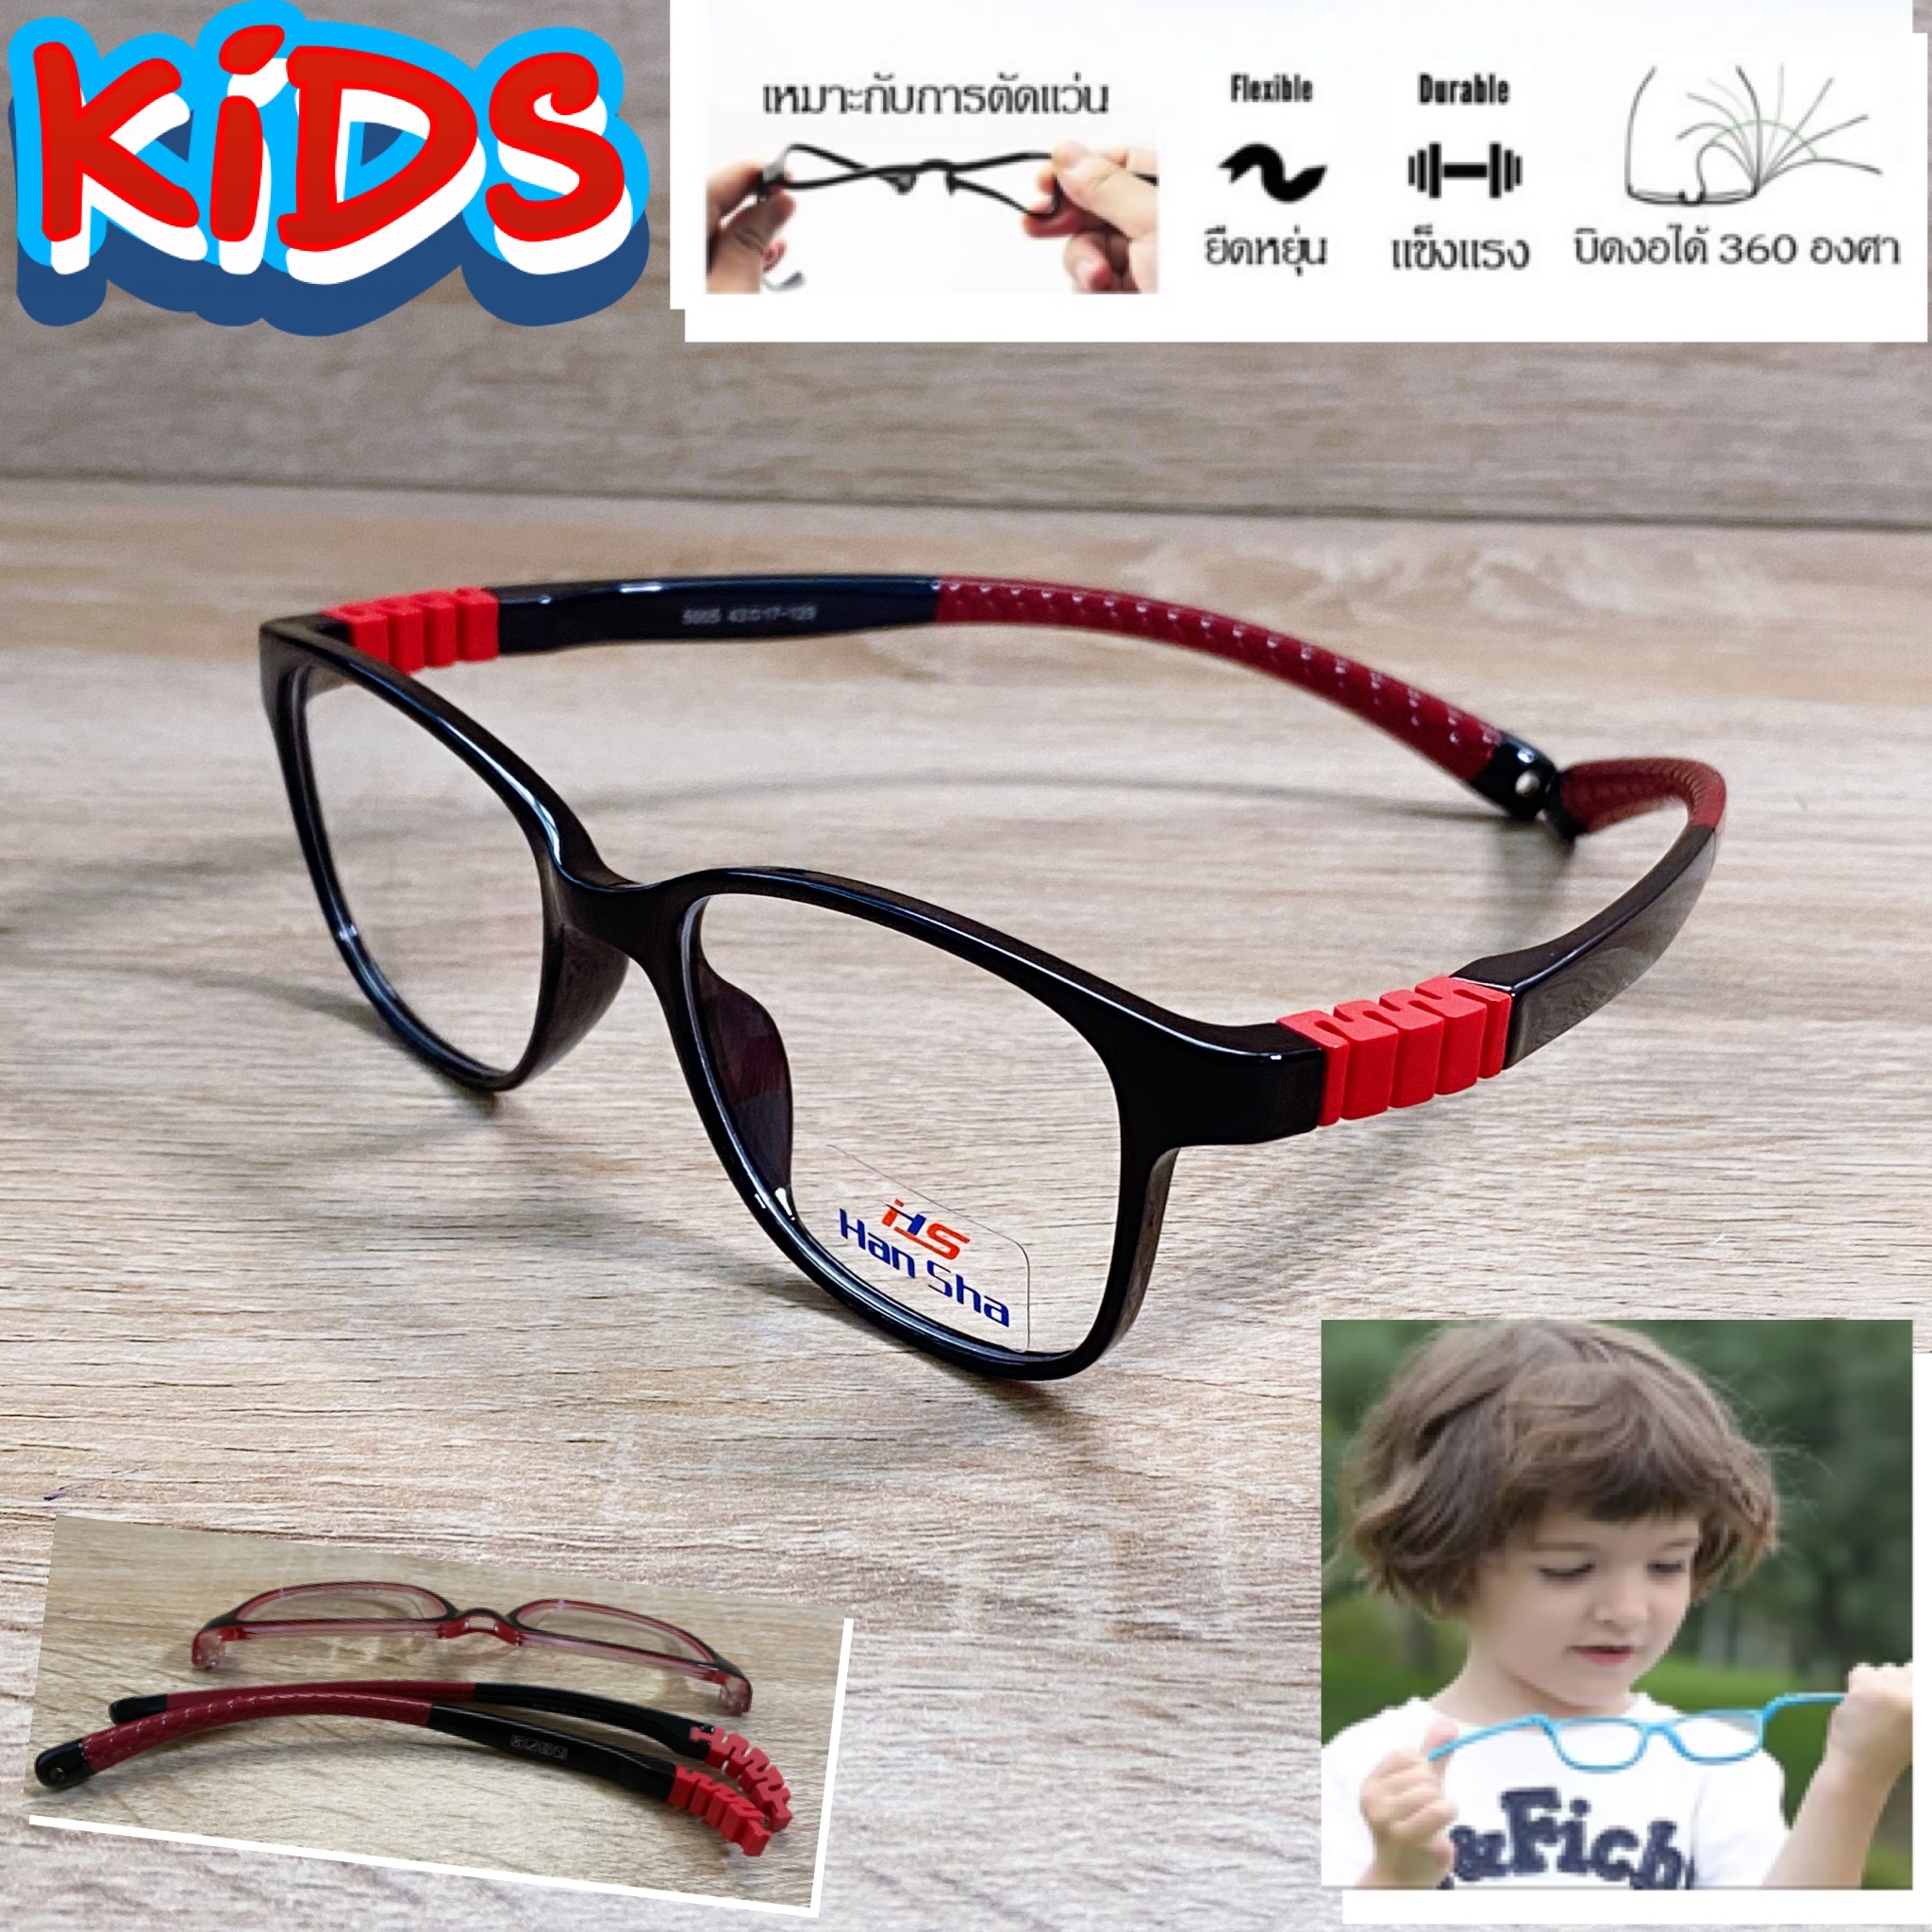 แว่นตาเด็ก กรอบแว่นตาเด็ก สำหรับตัดเลนส์ แว่นตา Han Sha รุ่น 5005 สีดำตัดแดง ขาไม่ใช้น็อต ยืดหยุ่น ถอดขาเปลี่ยนได้ วัสดุ TR 90 เบา ไม่แตกหัก